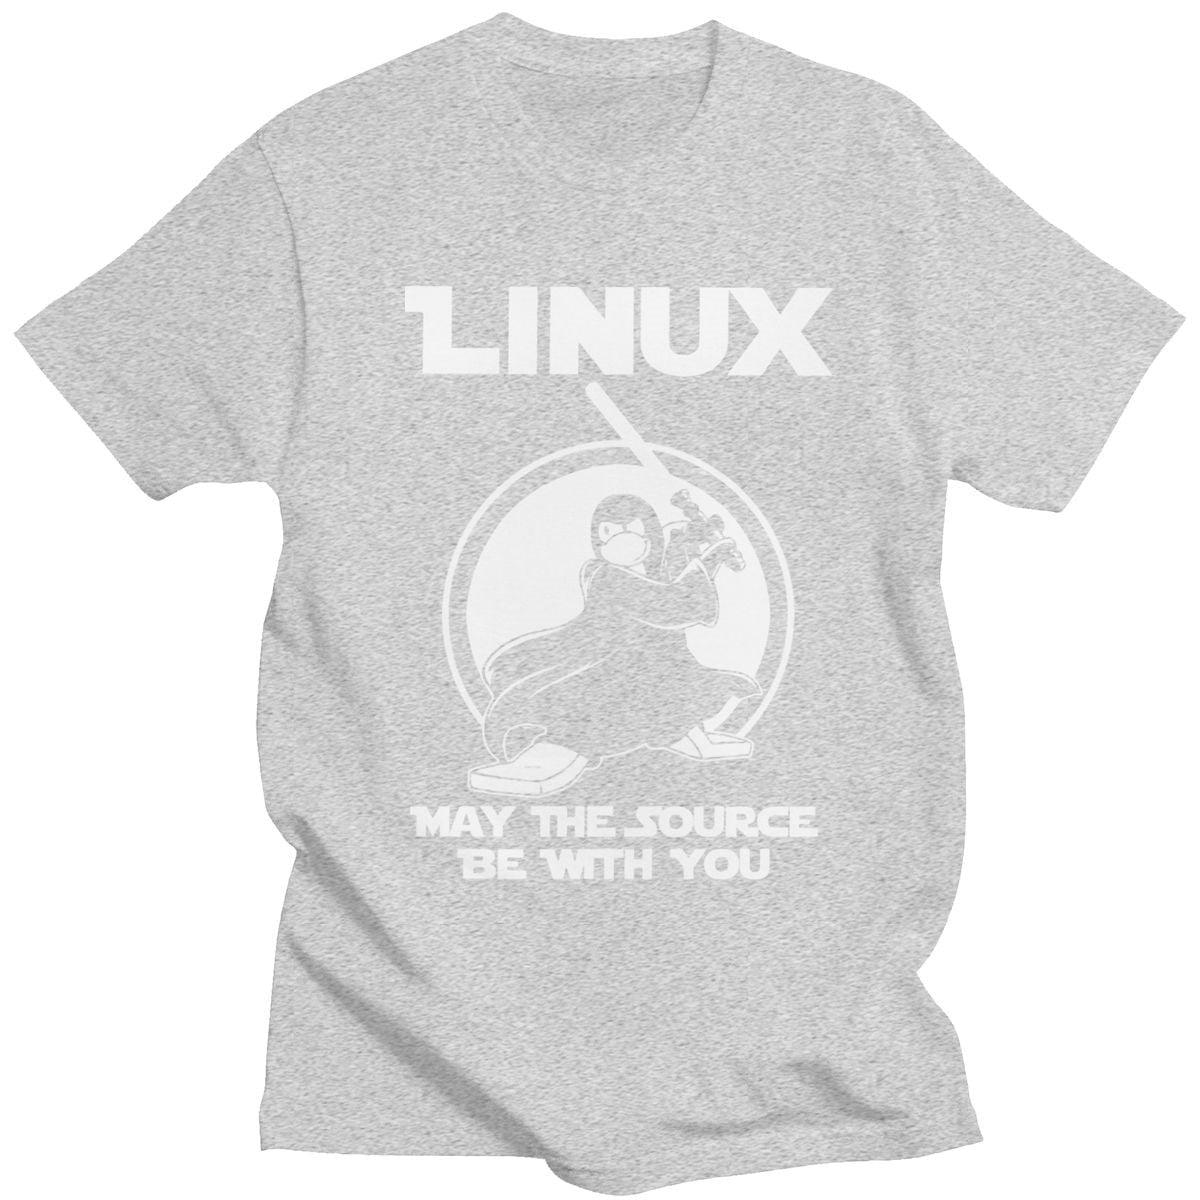 T shirt Linux gris